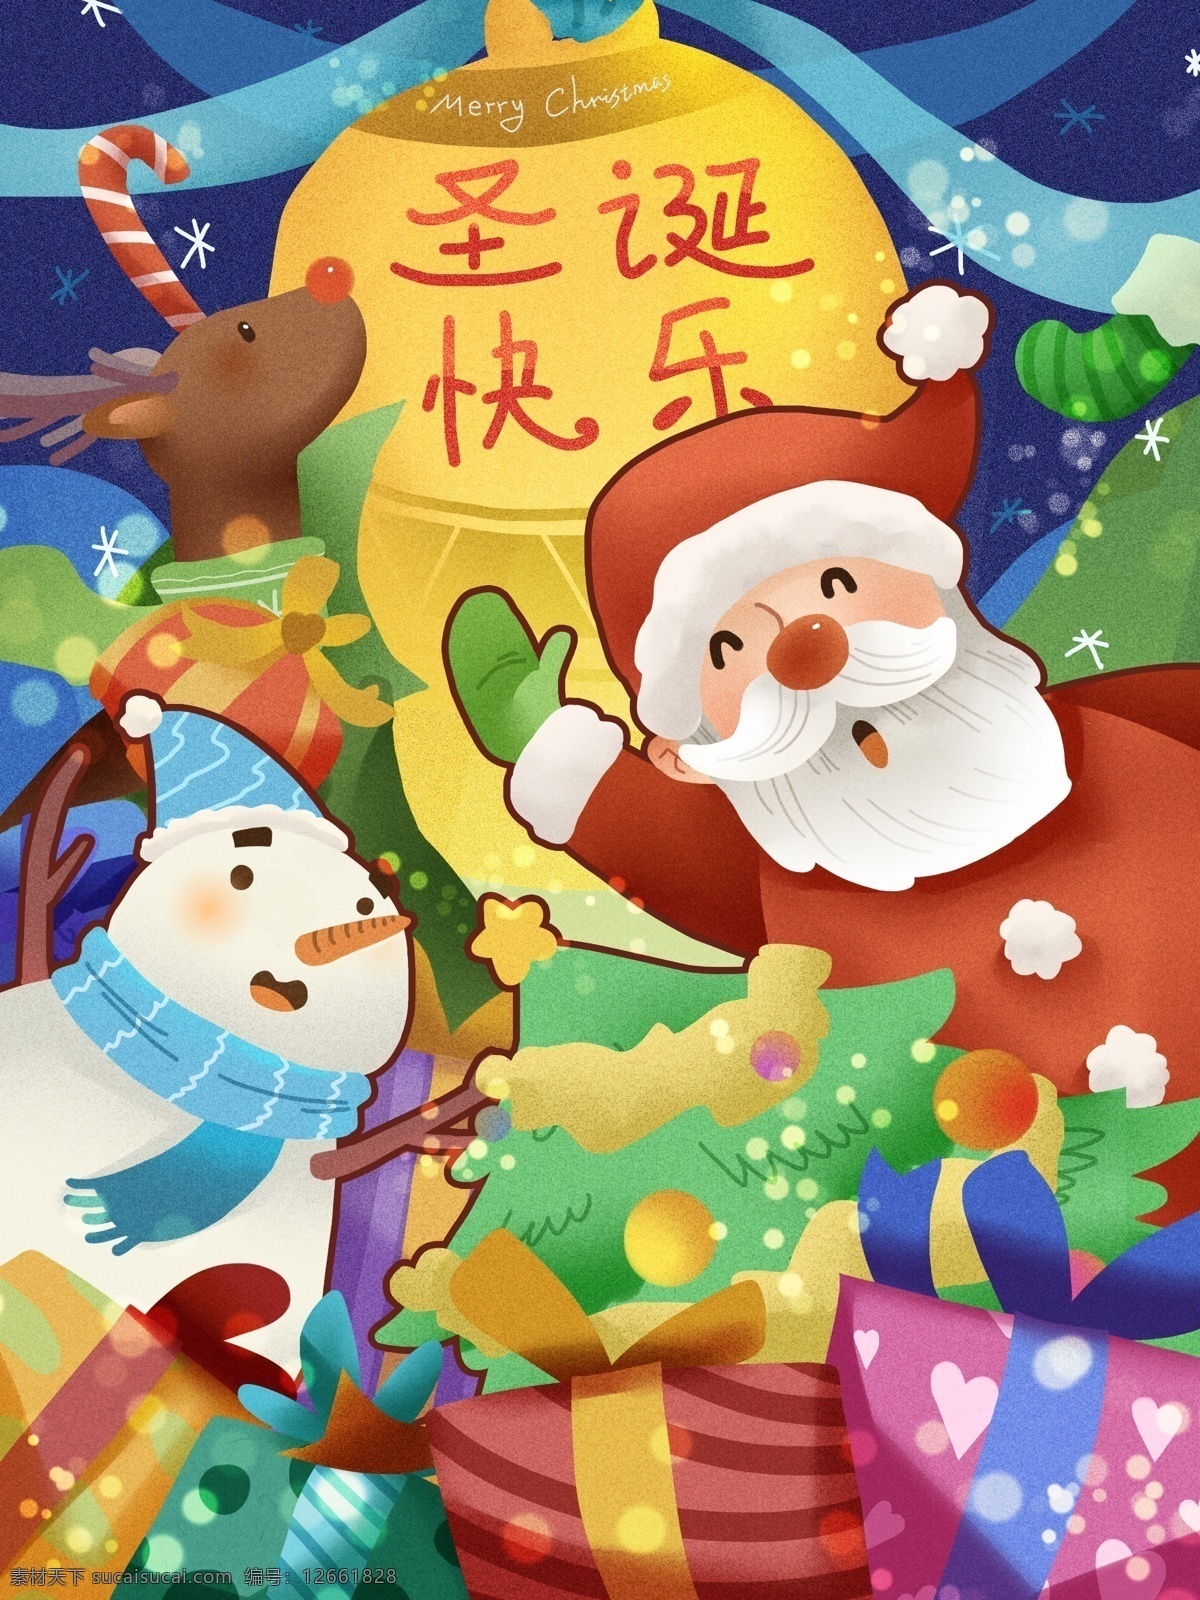 圣诞节 之欢 呼 节日 快乐 驯鹿 雪人 礼物 盒 庆祝 喜庆 袜子 圣诞 拐杖糖 树